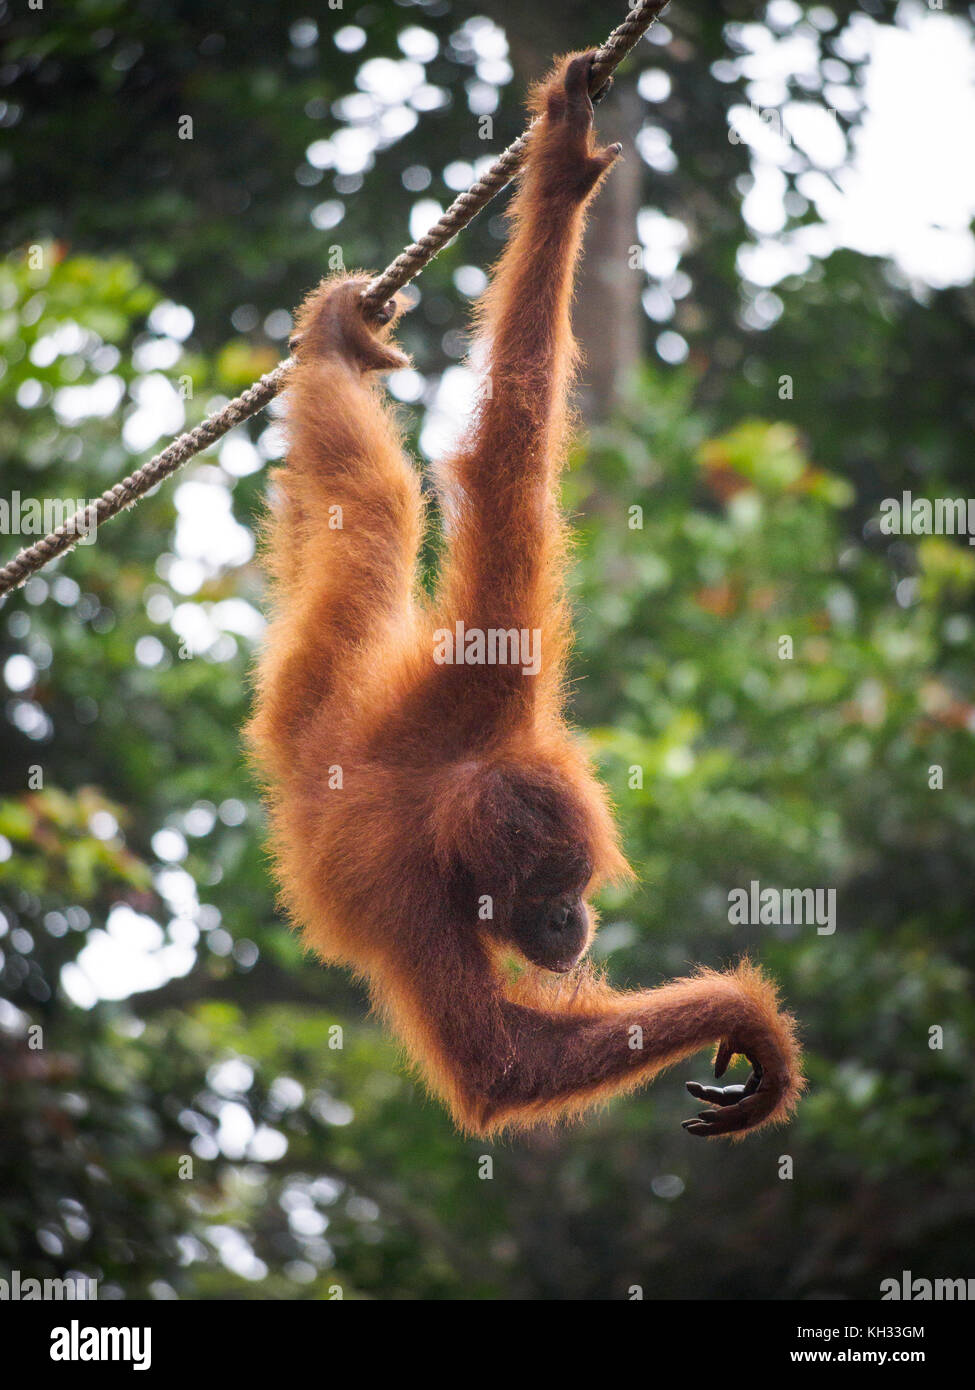 Bornean Orangutan (Pongo pygmaeus) hanging from cable at Orangutan Rehabilitation Centre, Sepilok, Sabah, Borneo, Malaysia Stock Photo